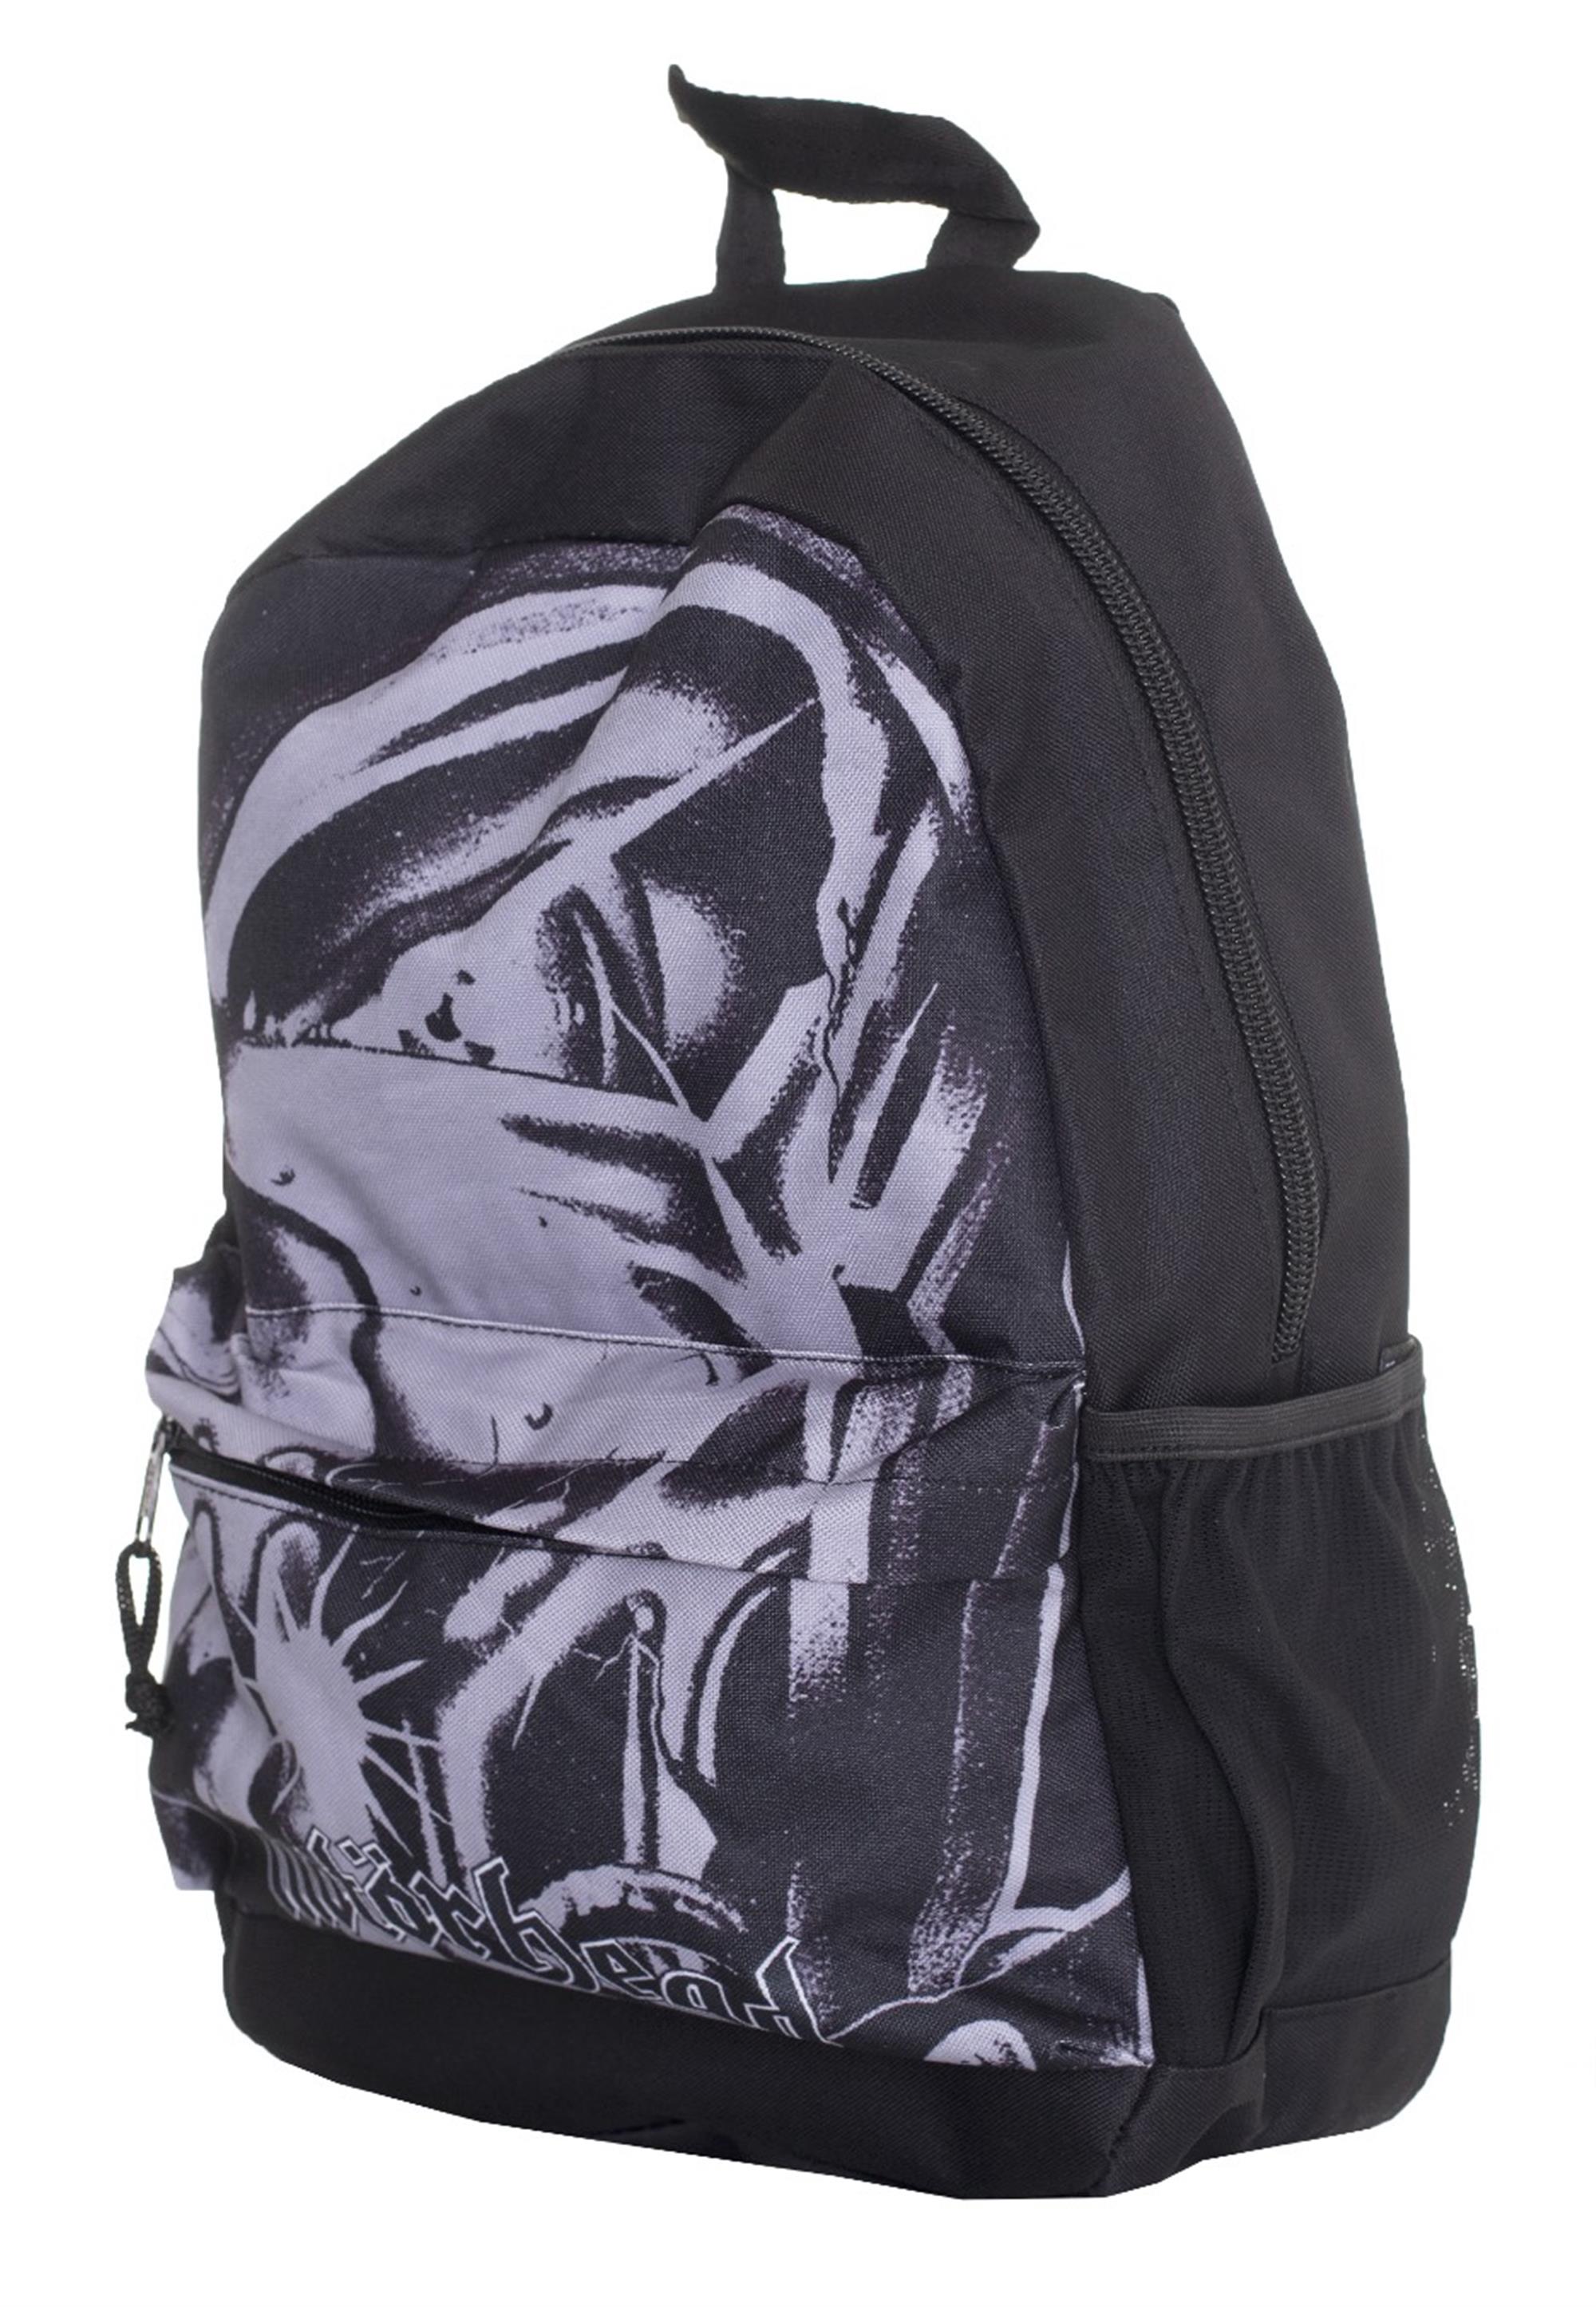 Warpig Backpack